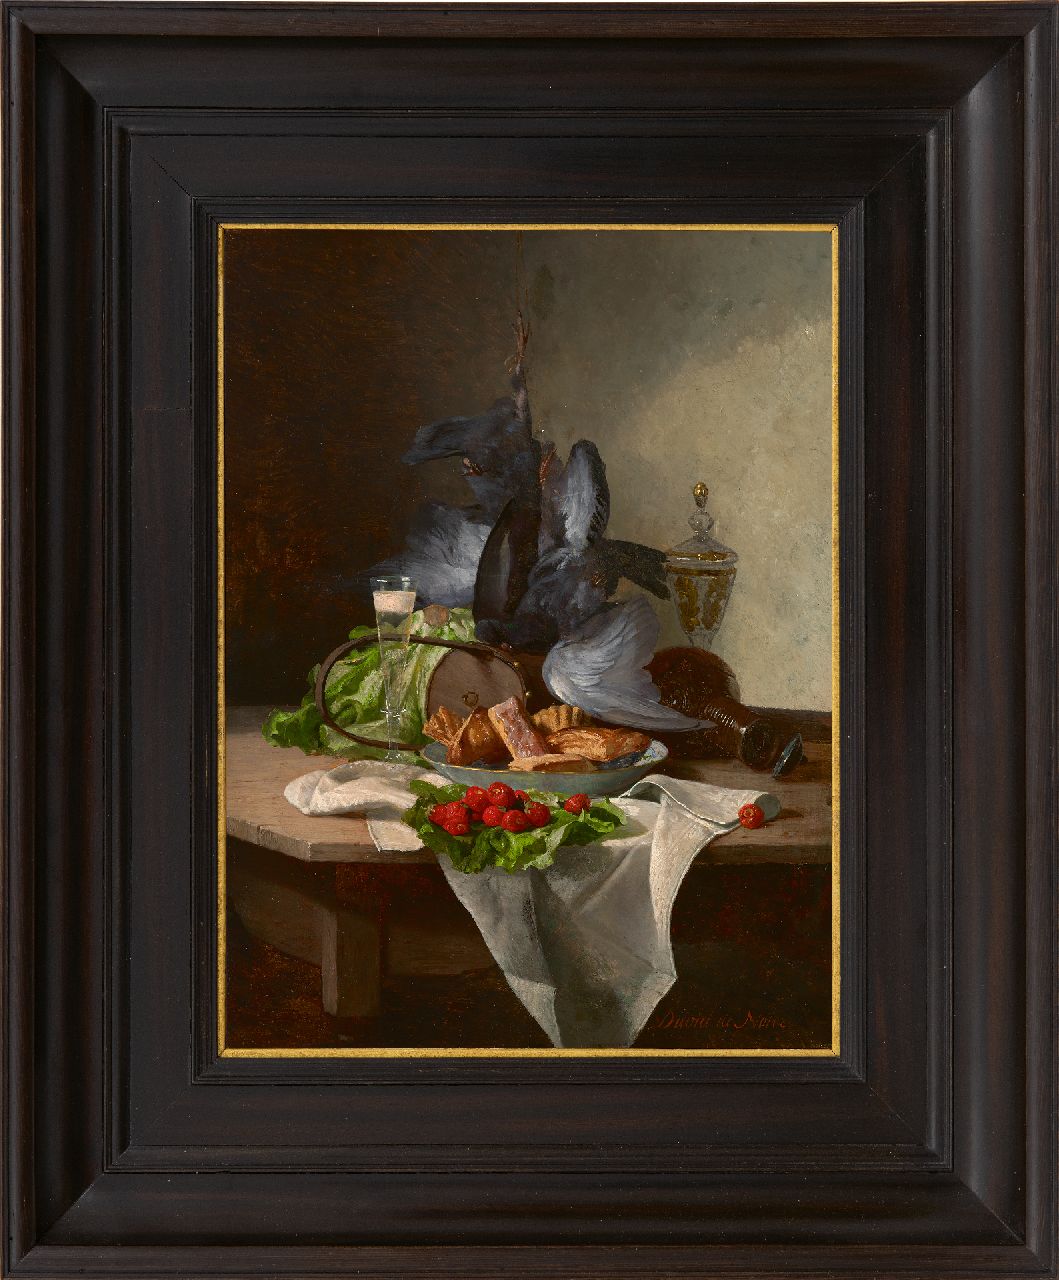 Noter D.E.J. de | 'David' Emile Joseph de Noter | Gemälde zum Verkauf angeboten | Stilleben mit Gemüse, Pastete und Wild, Öl auf Holz 30,4 x 22,8 cm, Unterzeichnet r.u.